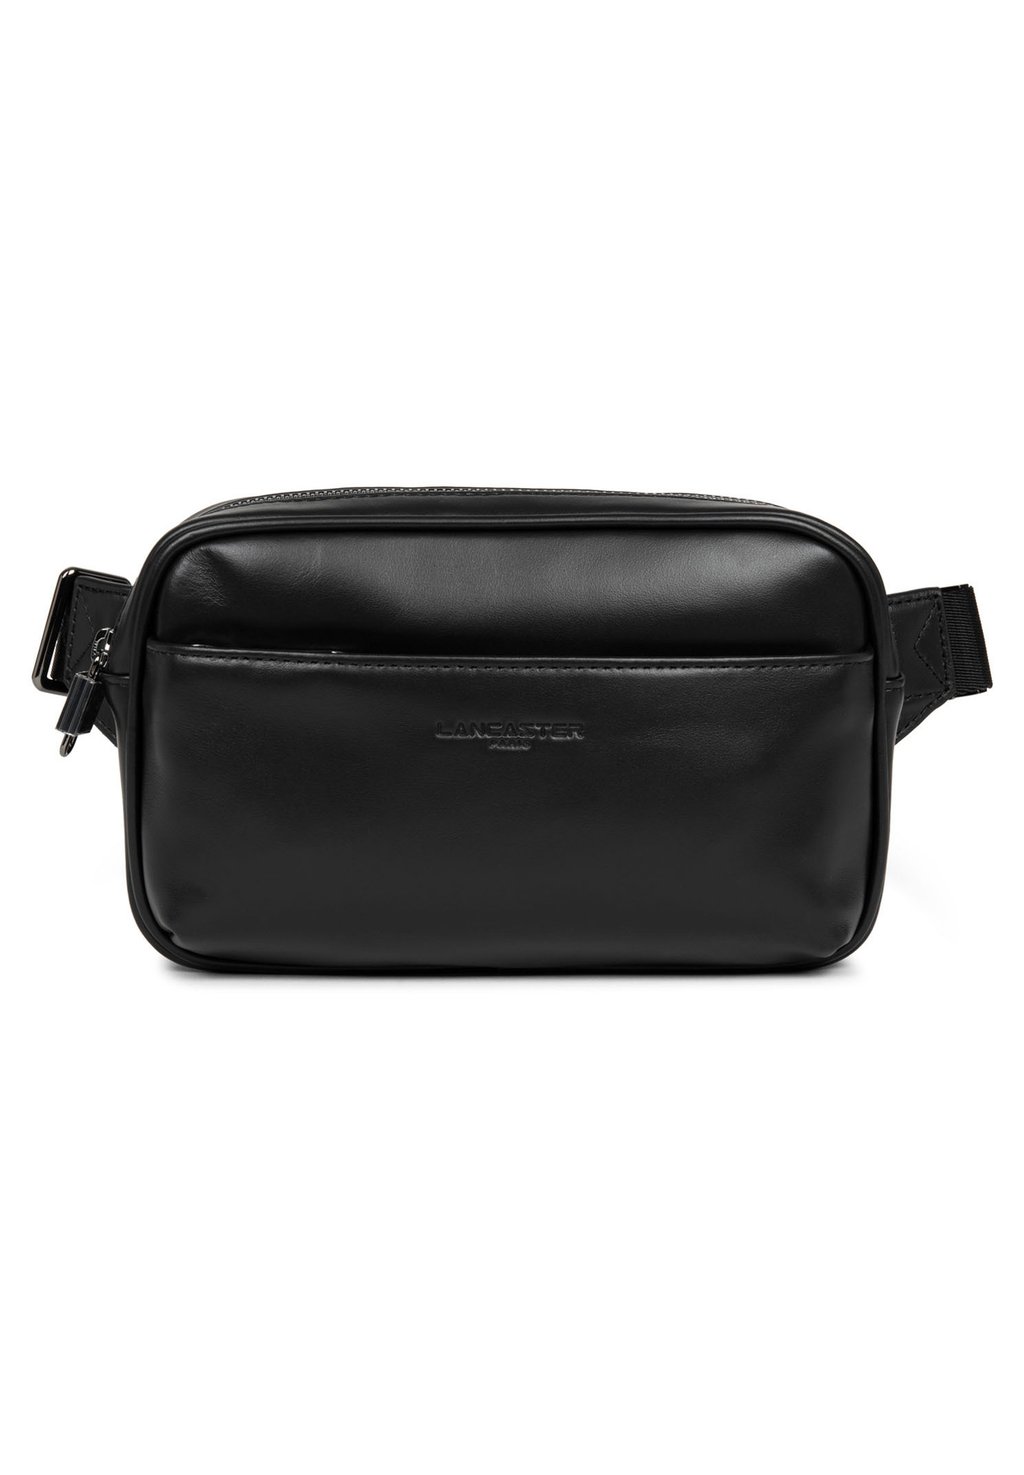 Поясная сумка LANCASTER, цвет noir сумка sierra lancaster цвет noir